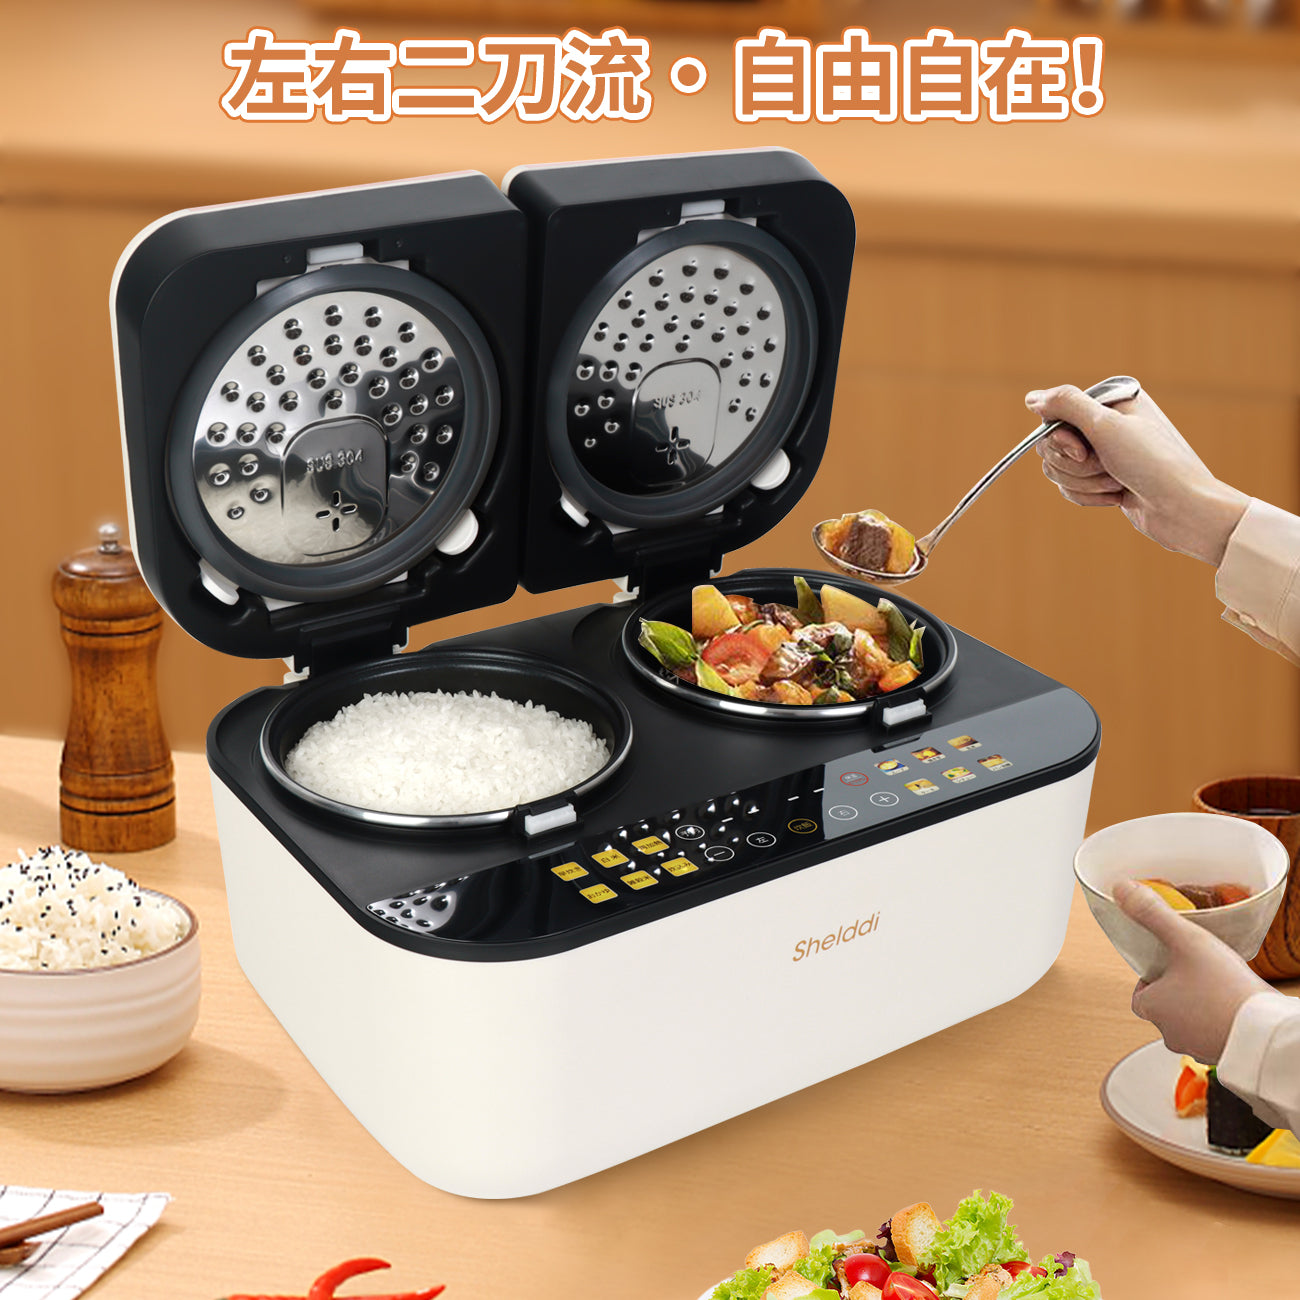 山善 マイコン炊飯器 3合炊き ホワイト CJR-M05(W) - 炊飯器・餅